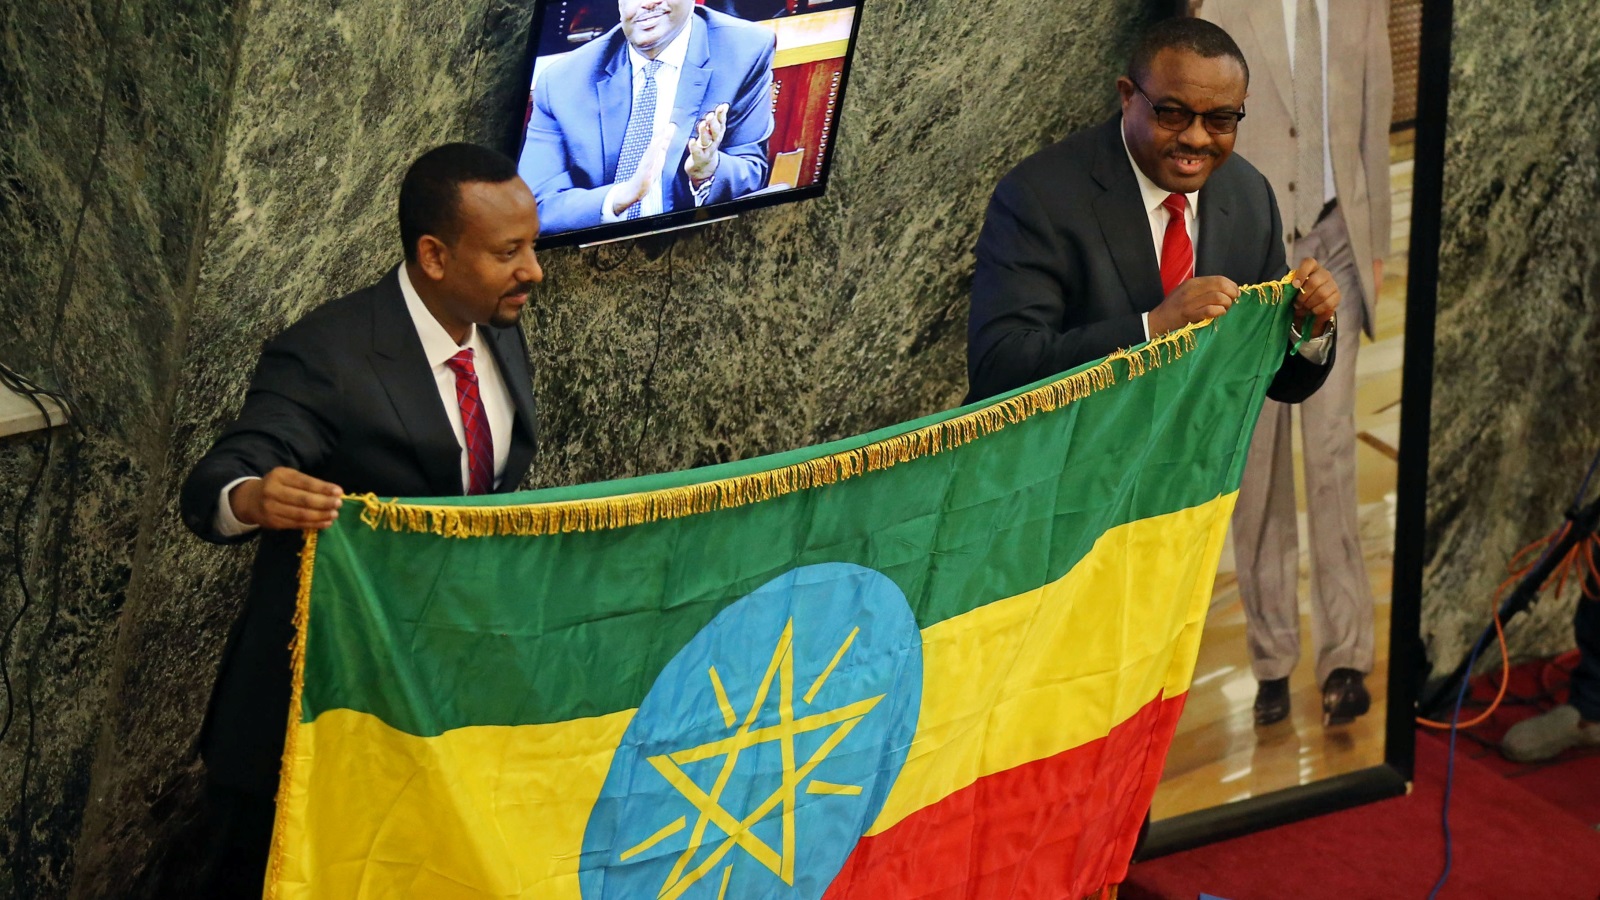 من المعروف أن إثيوبيا تحتضن نحو 85 مجموعة عرقية تتميز بتنوعها اللغوي والثقافي، ومع ذلك فقد حُكمت لقرون مديدة عبر نظام حكم يقوم على مركزية مطلقة